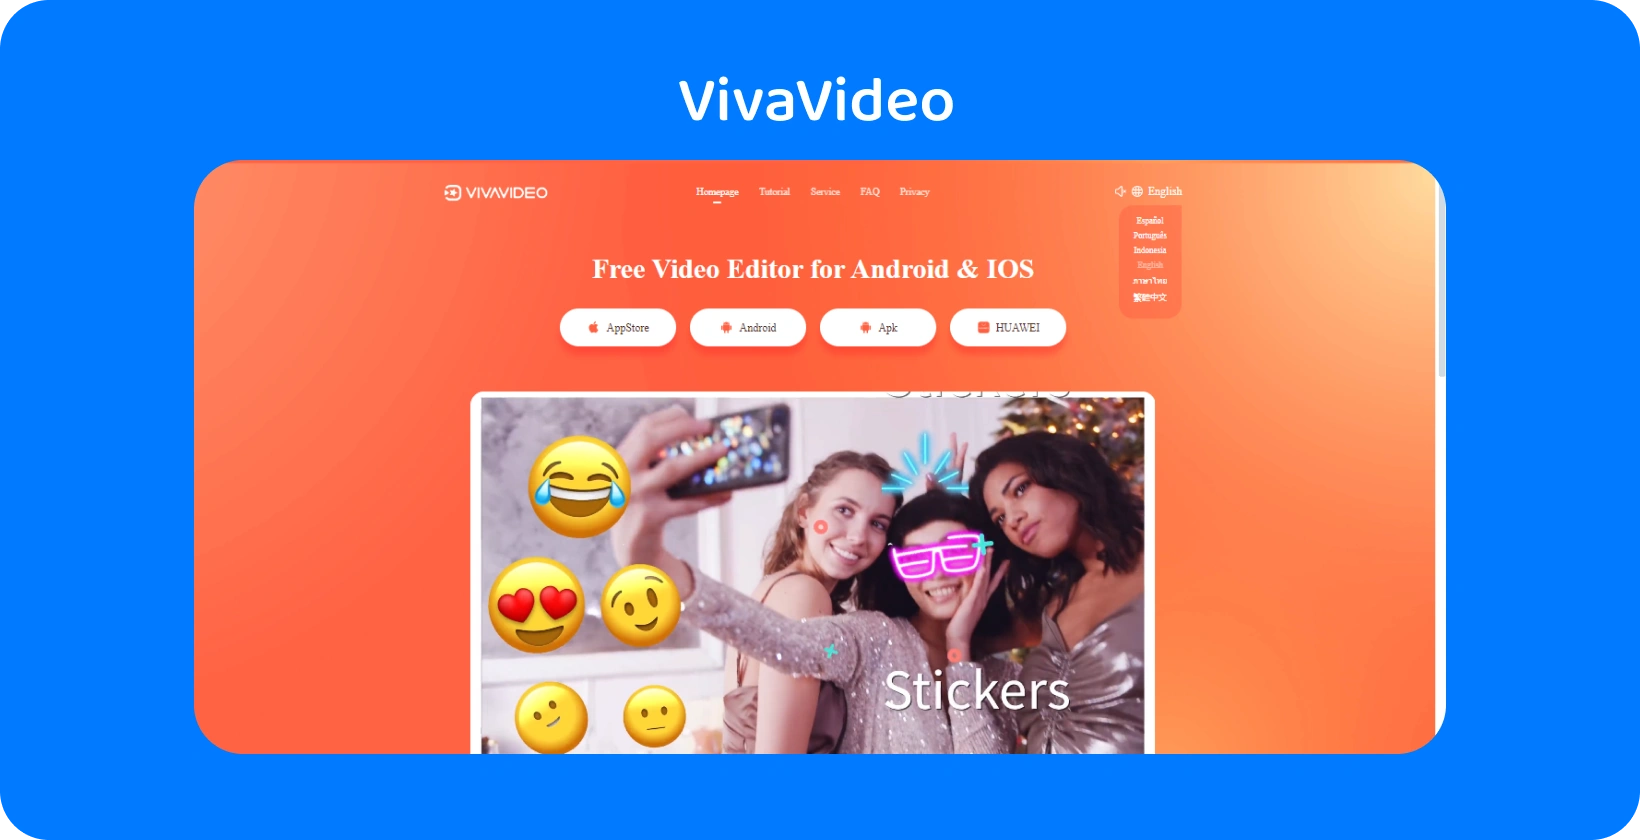 具有鲜艳橙色背景的 VivaVideo 应用页面，展示了用于增强 Android 和 iOS 上视频的贴纸功能。
